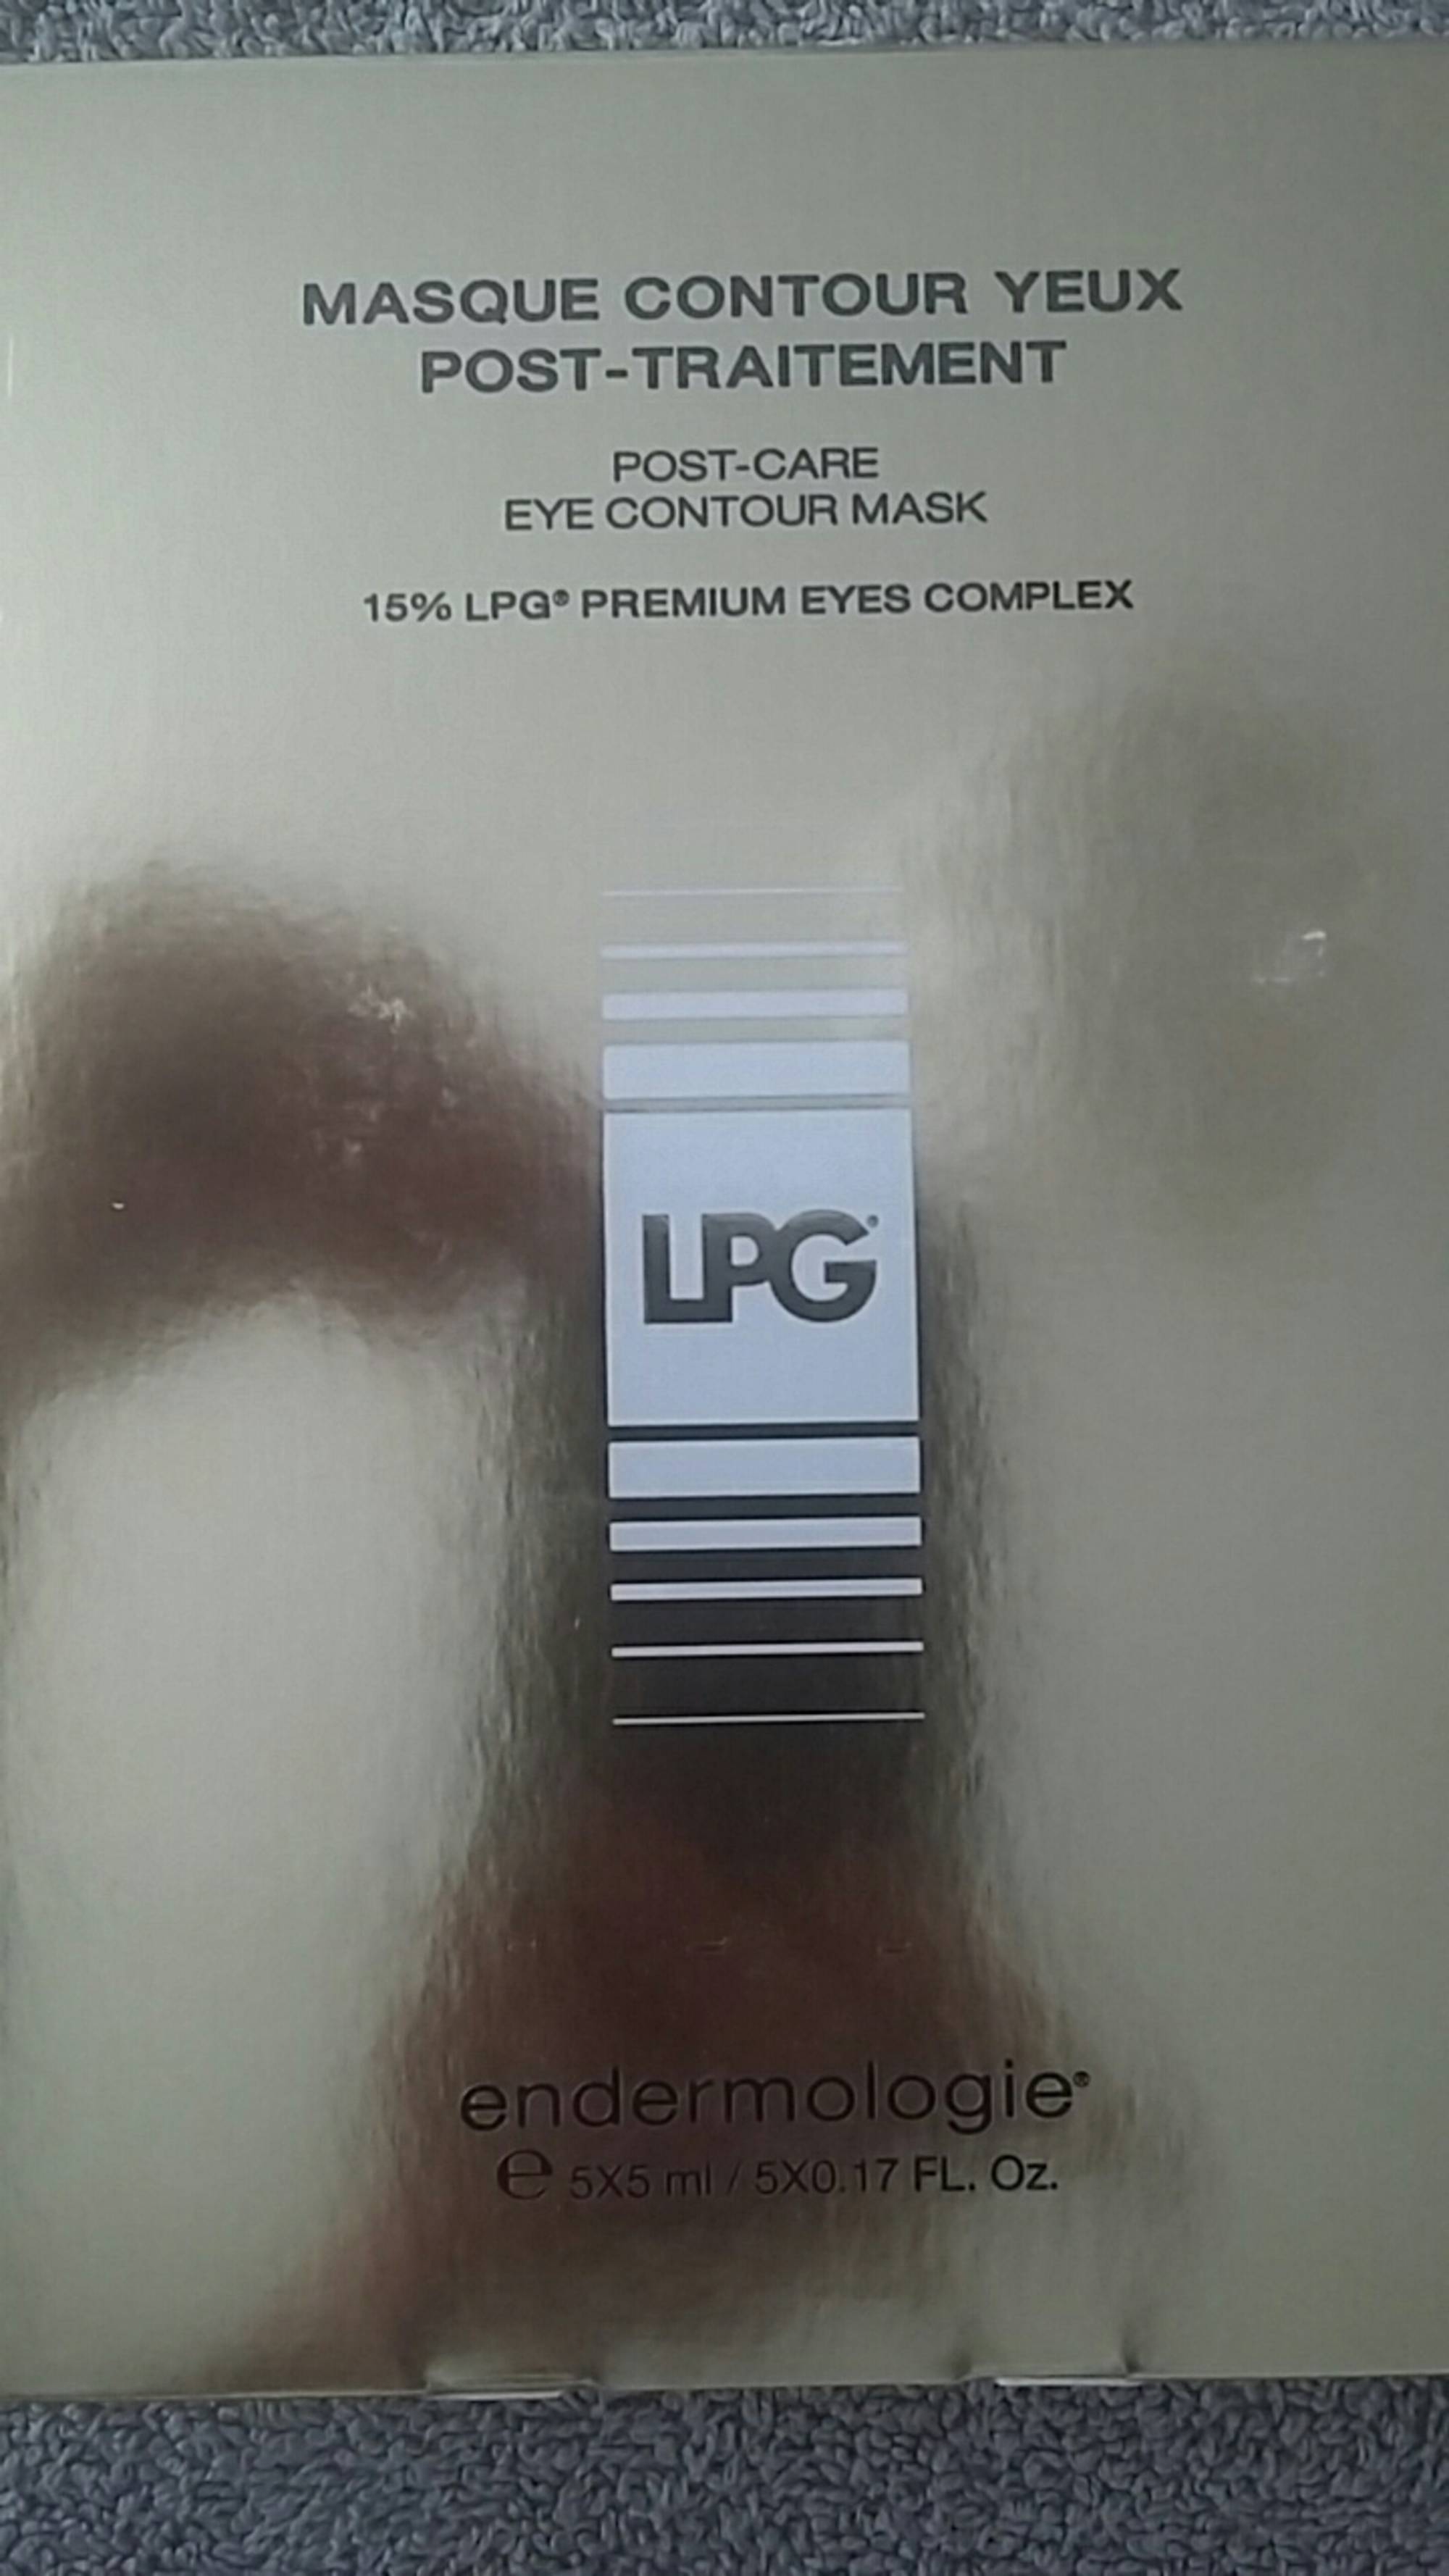 LPG - Masque contour yeux - Post-traitement